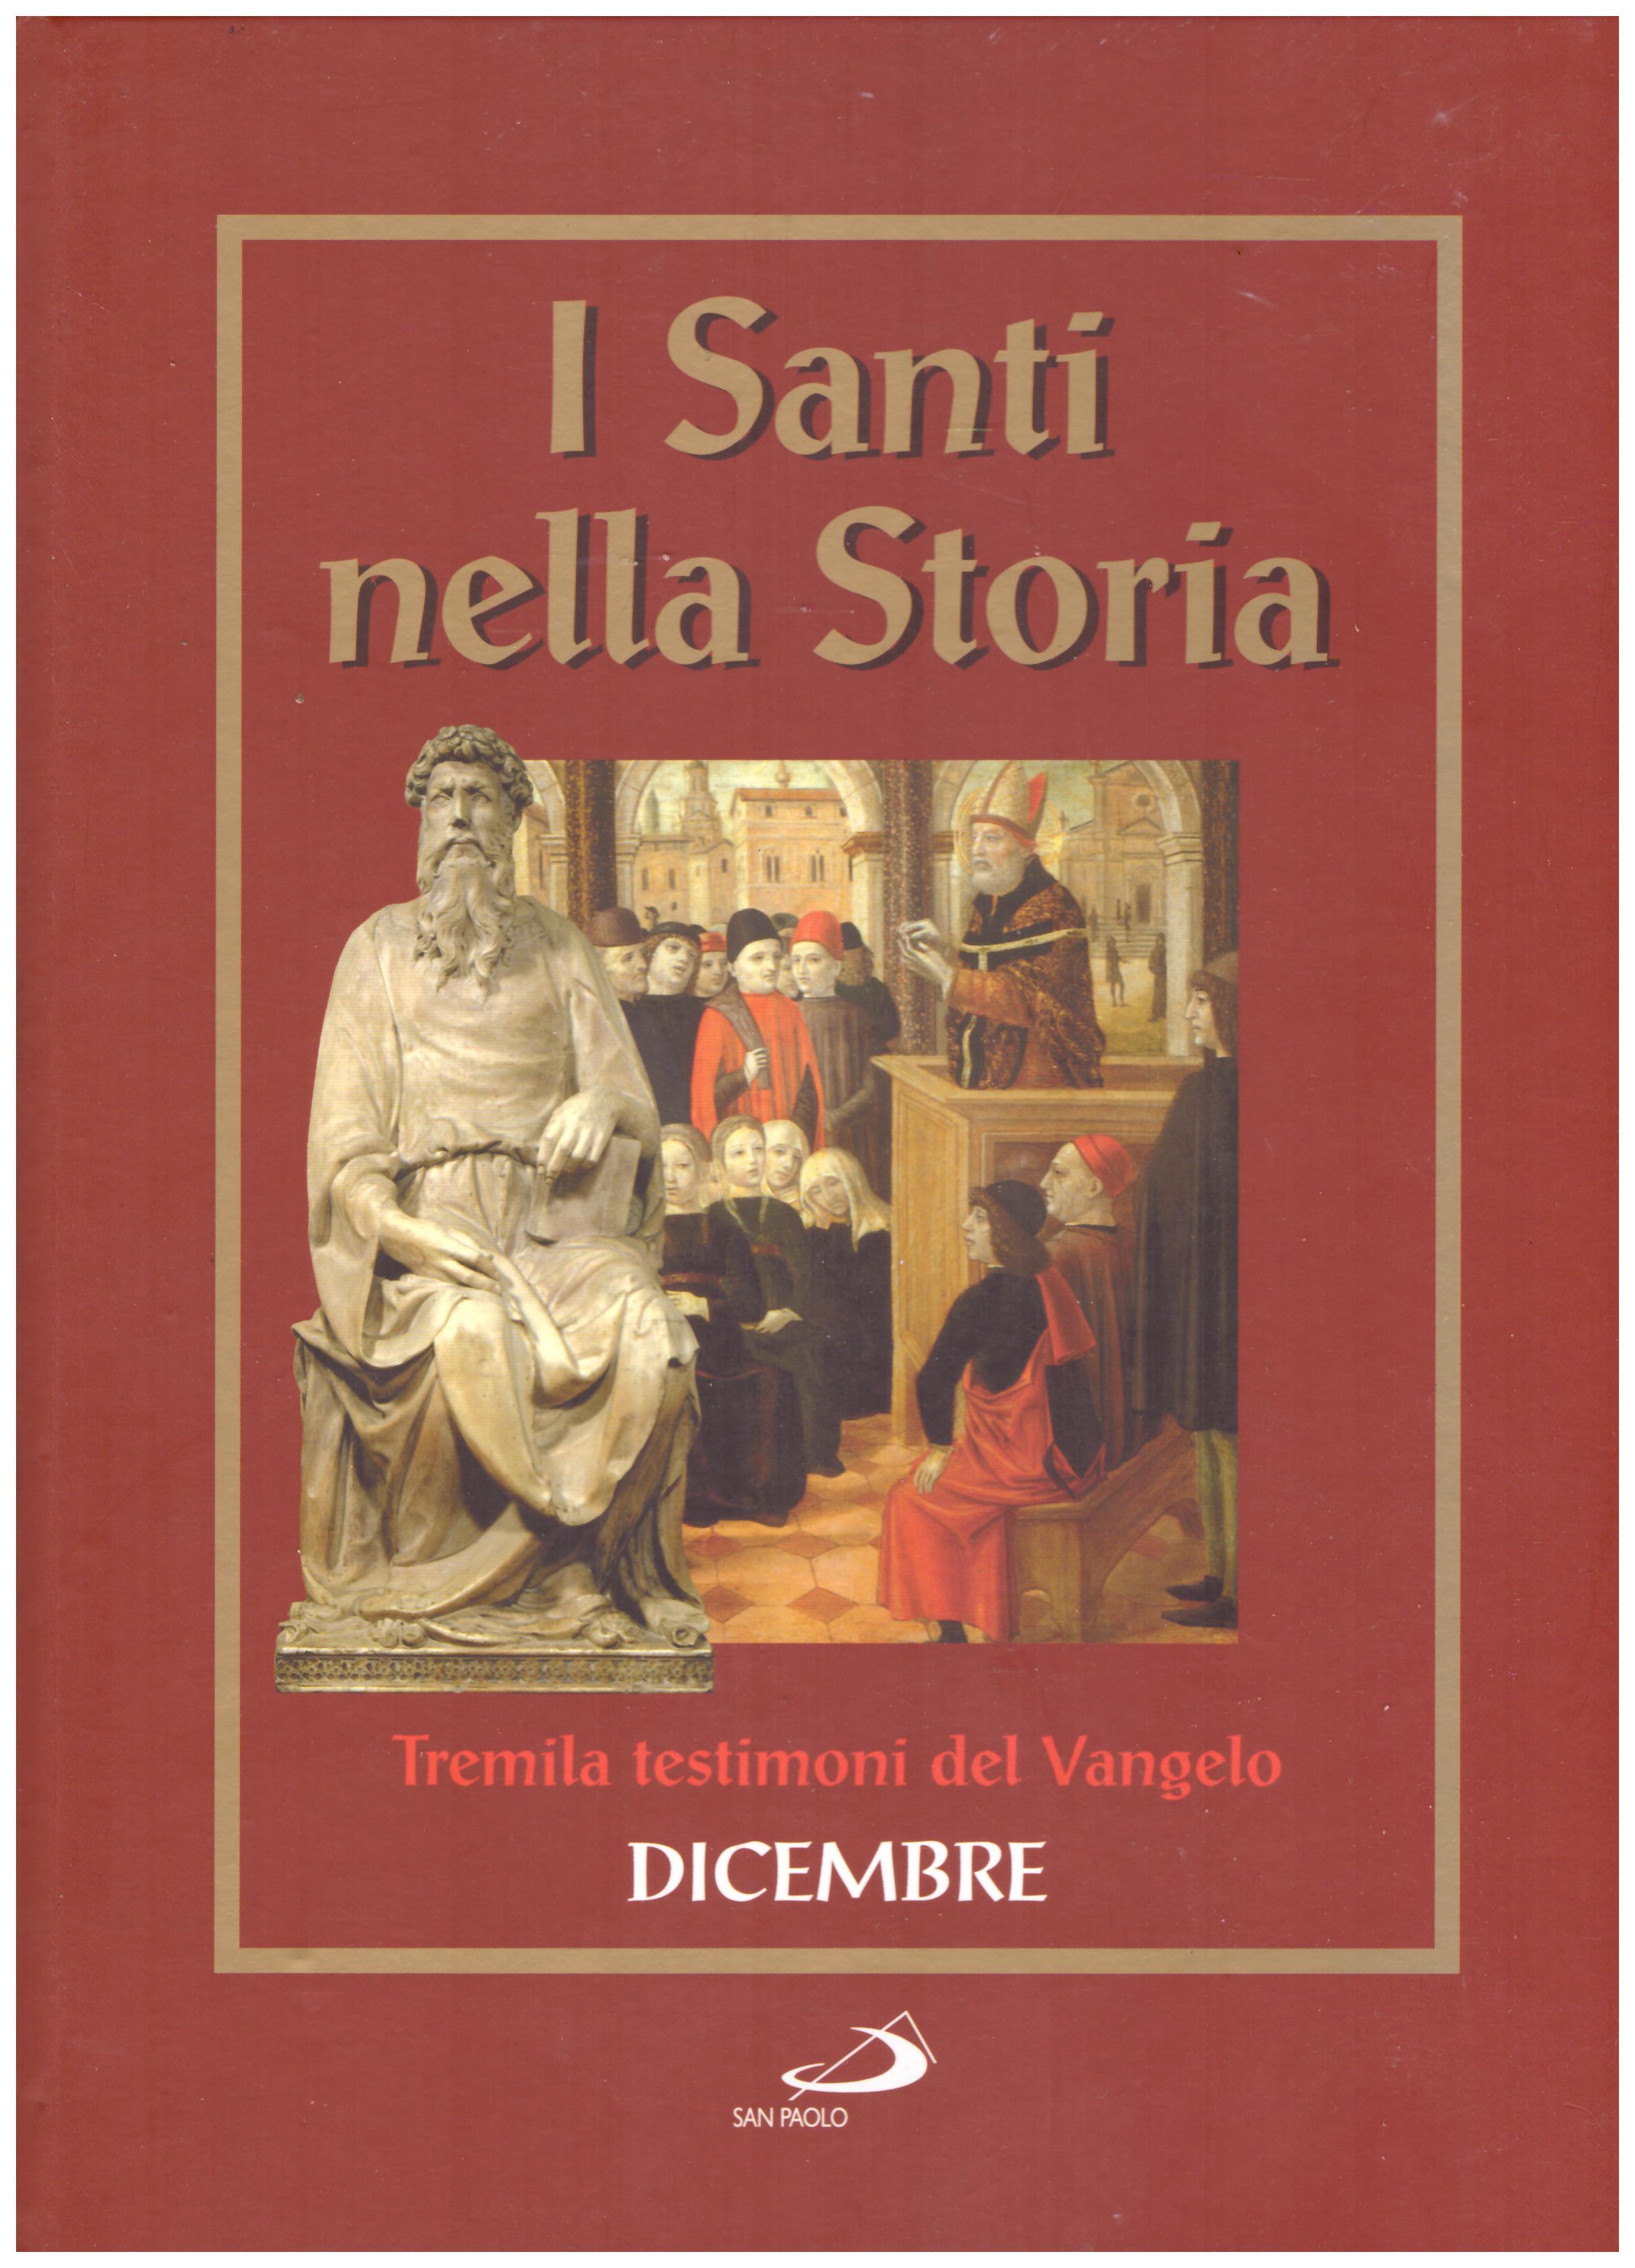 Titolo: I santi nella storia, tremila testimoni del Vangelo, Dicembre Autore : AA.VV.   Editore: San Paolo 2006